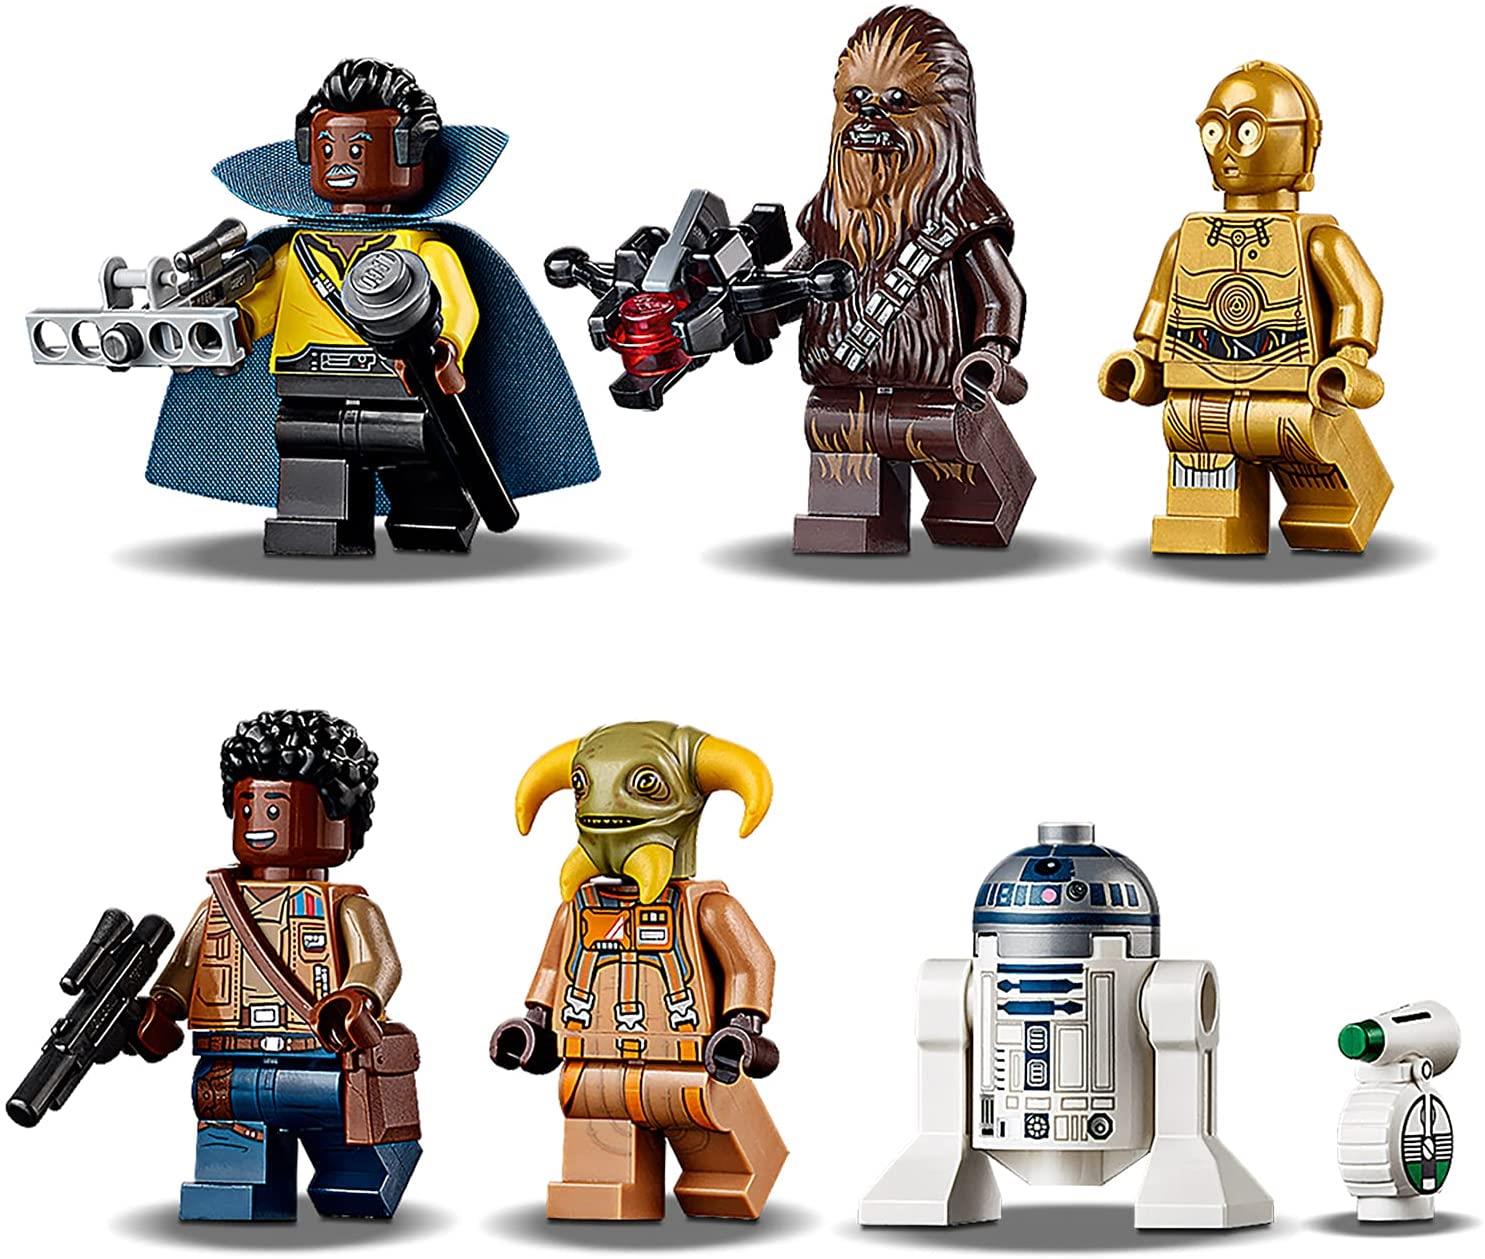 Lego Star Wars 75257 Milennium Falcon